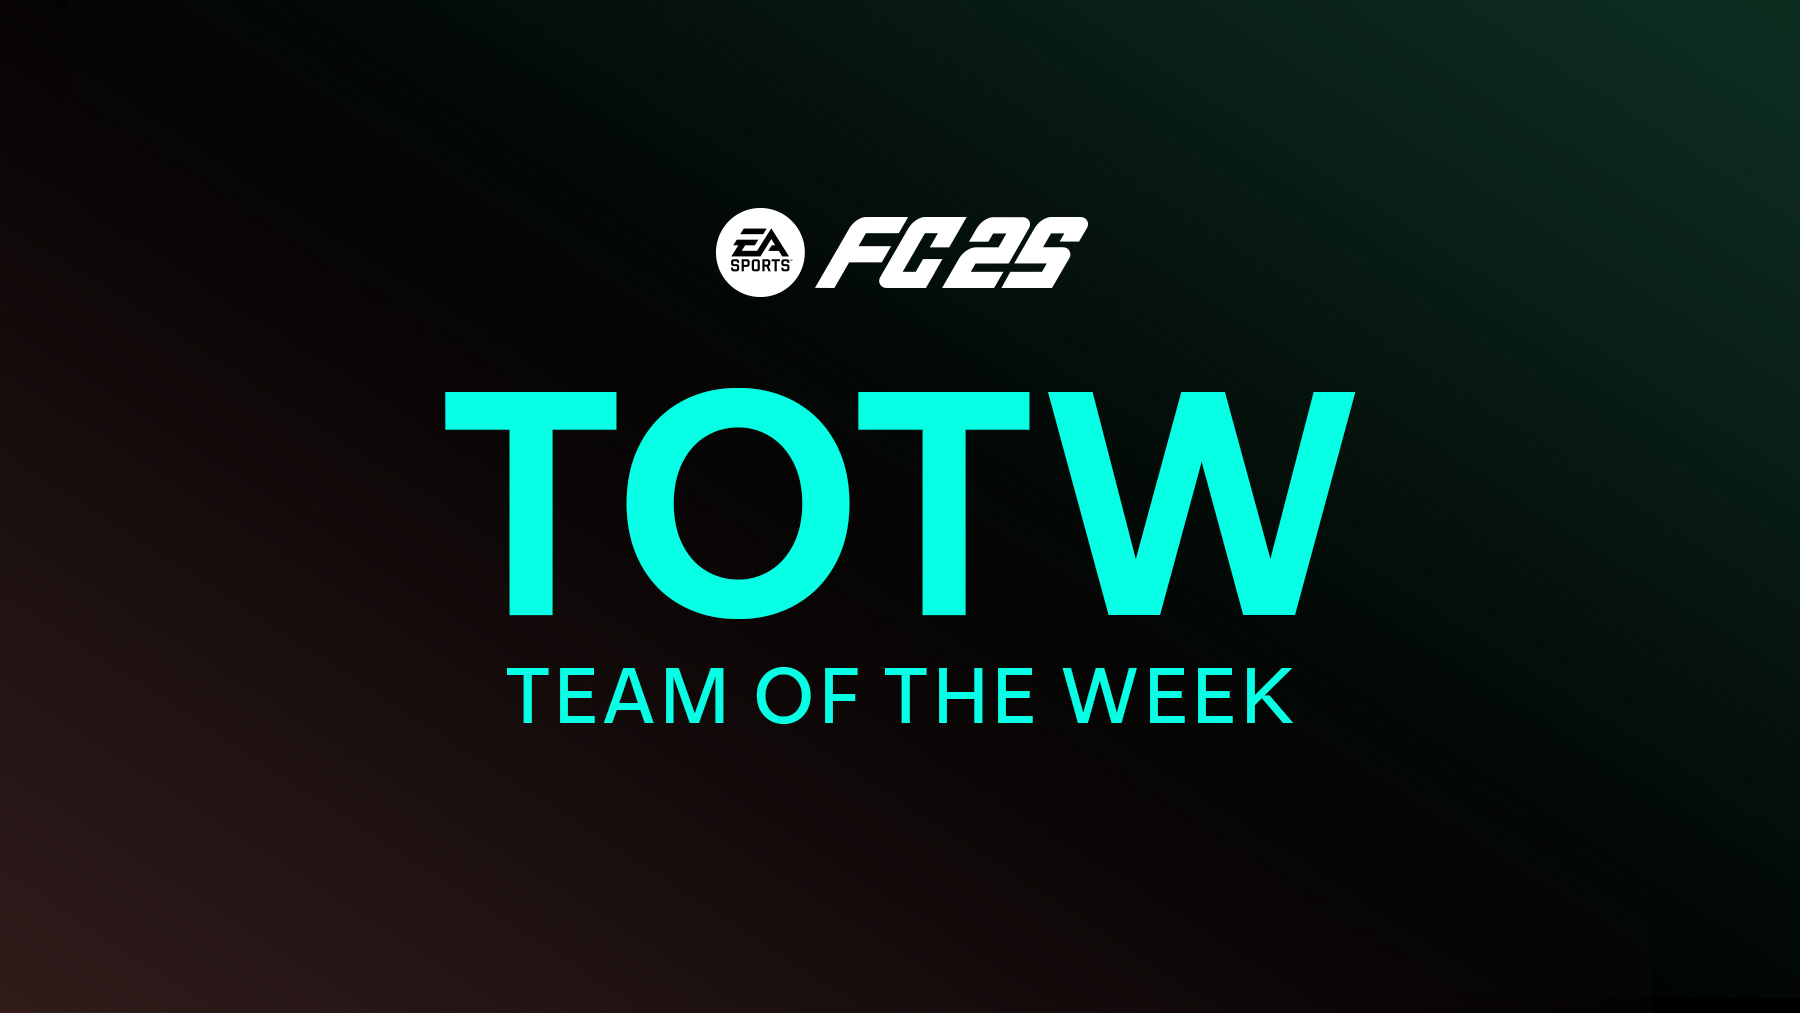 FC 25 Team of the Week